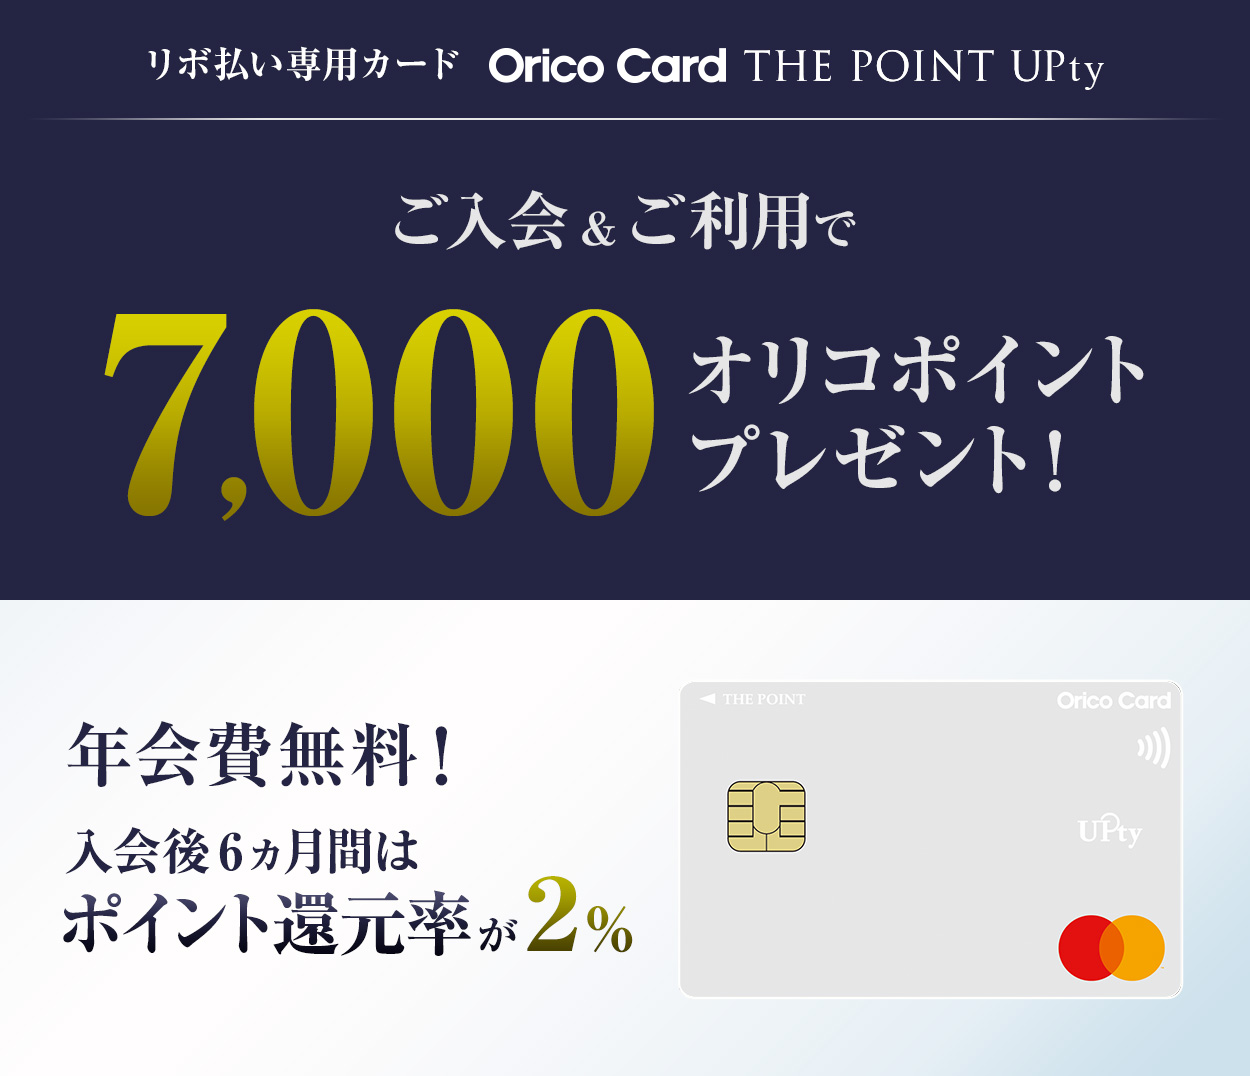 リボ払い専用カード Orico Card THW POINT UPty ご入会&ご利用で7,000オリコポイントプレゼント! 年会費無料! 入会後6ヵ月間はポイント還元率が2%